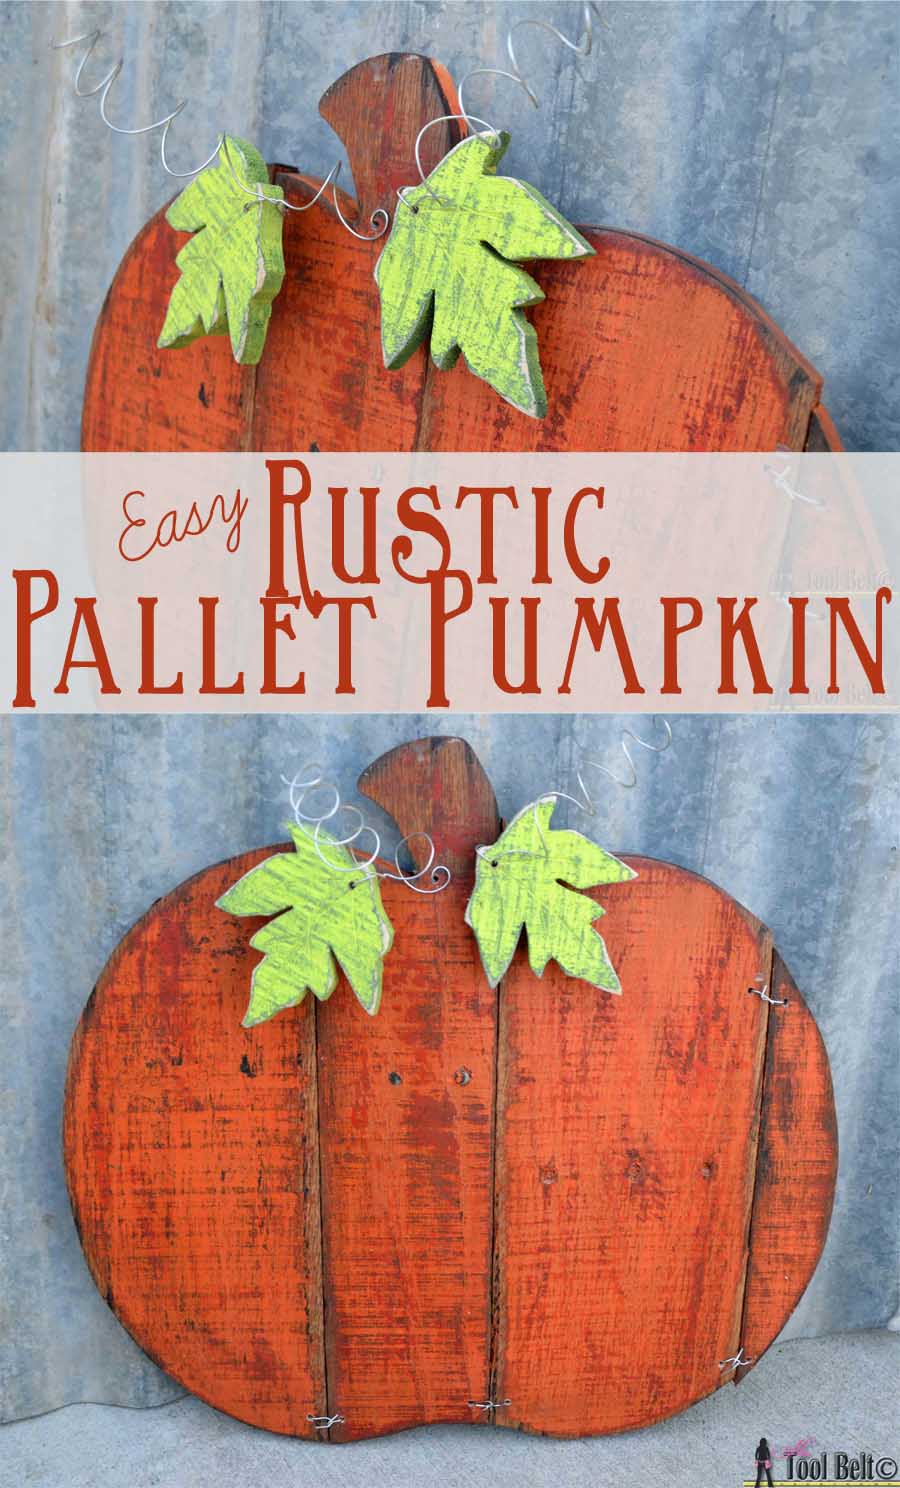 Rustic Pallet Pumpkin - Her Tool Belt